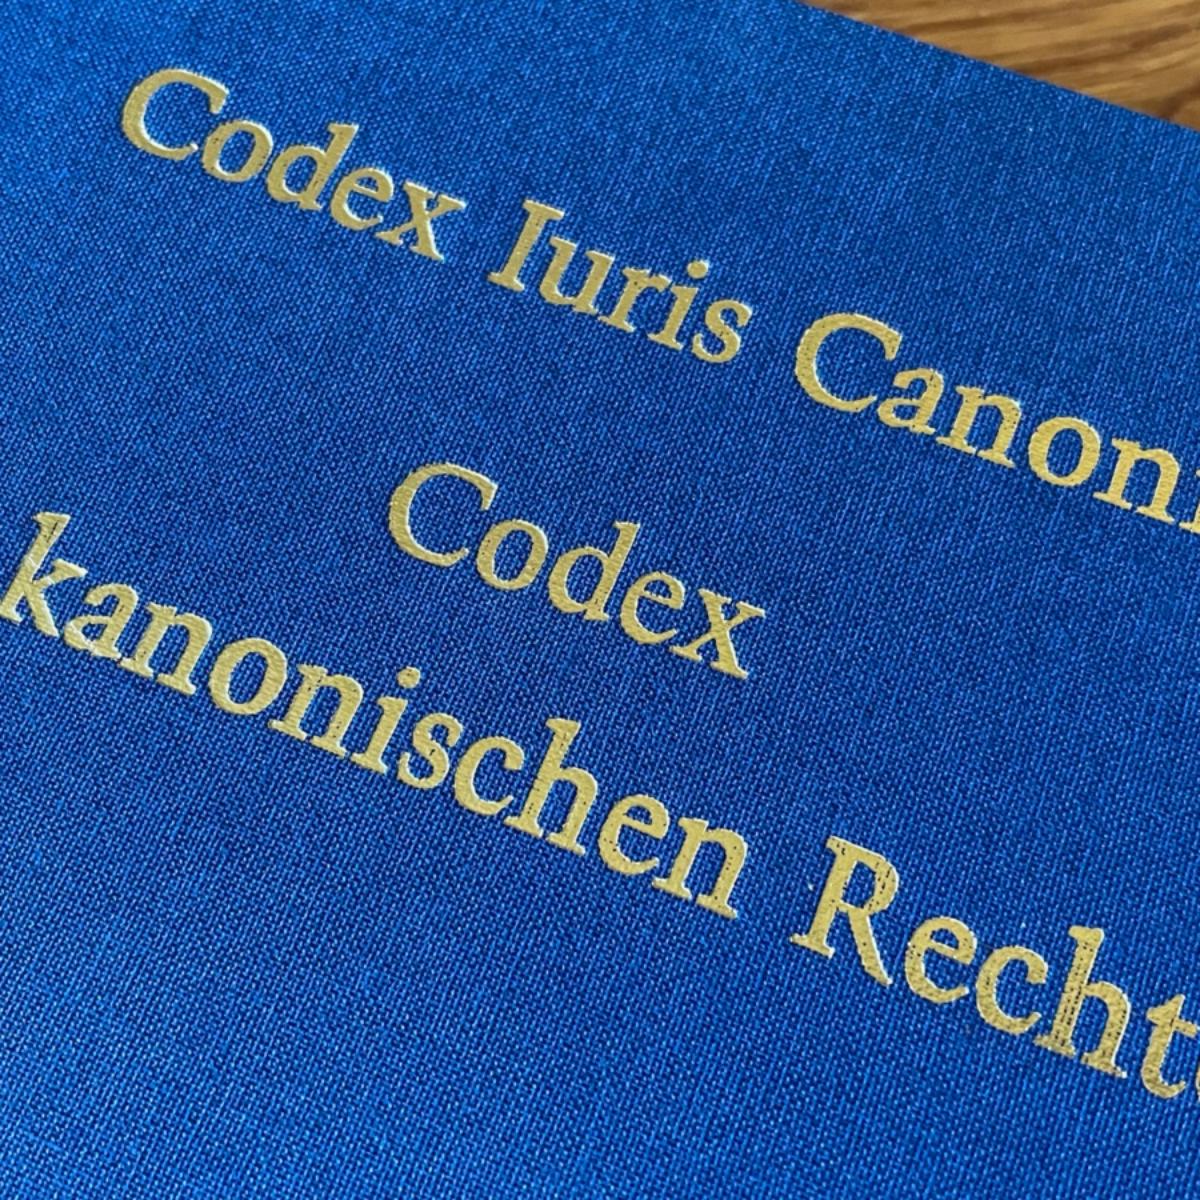 Der Codex des kanonischen Rechts bildet die Basis des Kirchenrechts. Der aktuelle Codex ist seit 1983 gültig.